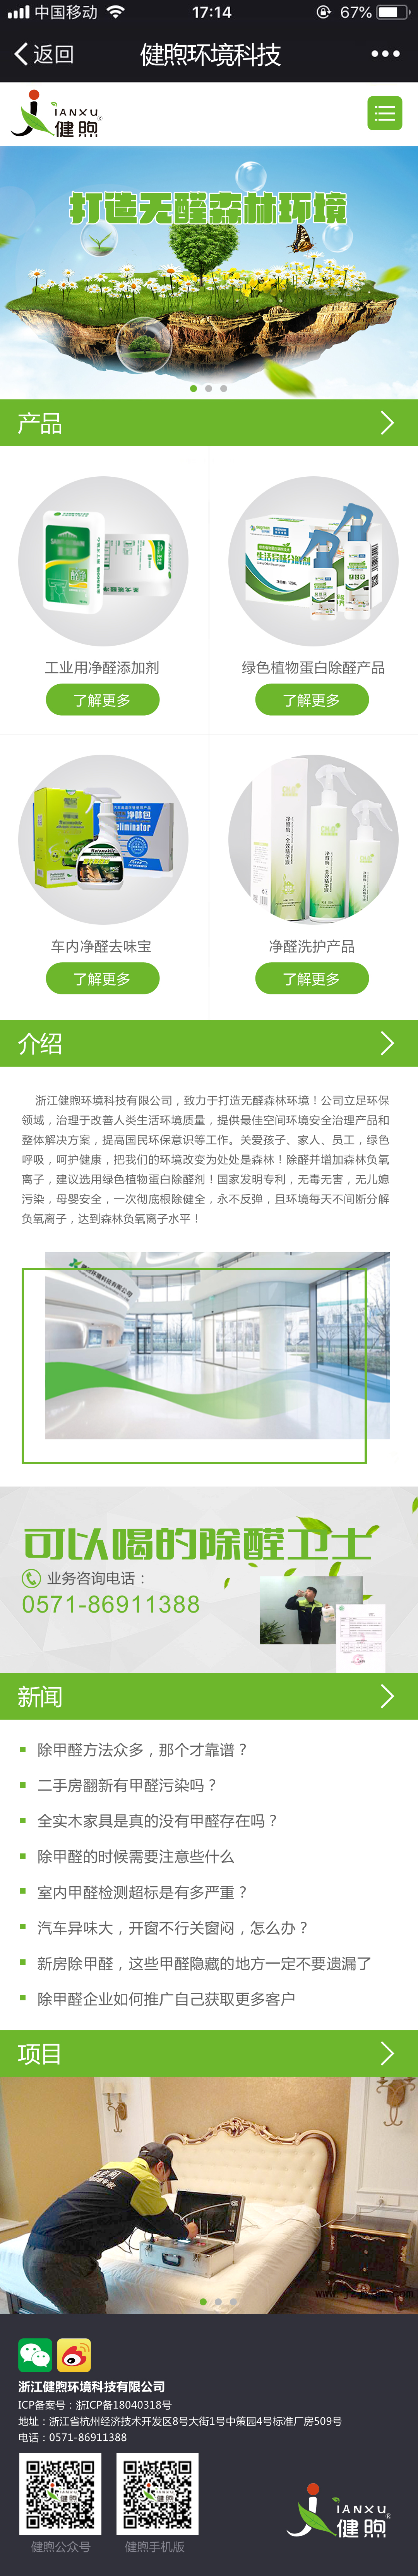 浙江健煦环境科技有限公司手机版设计